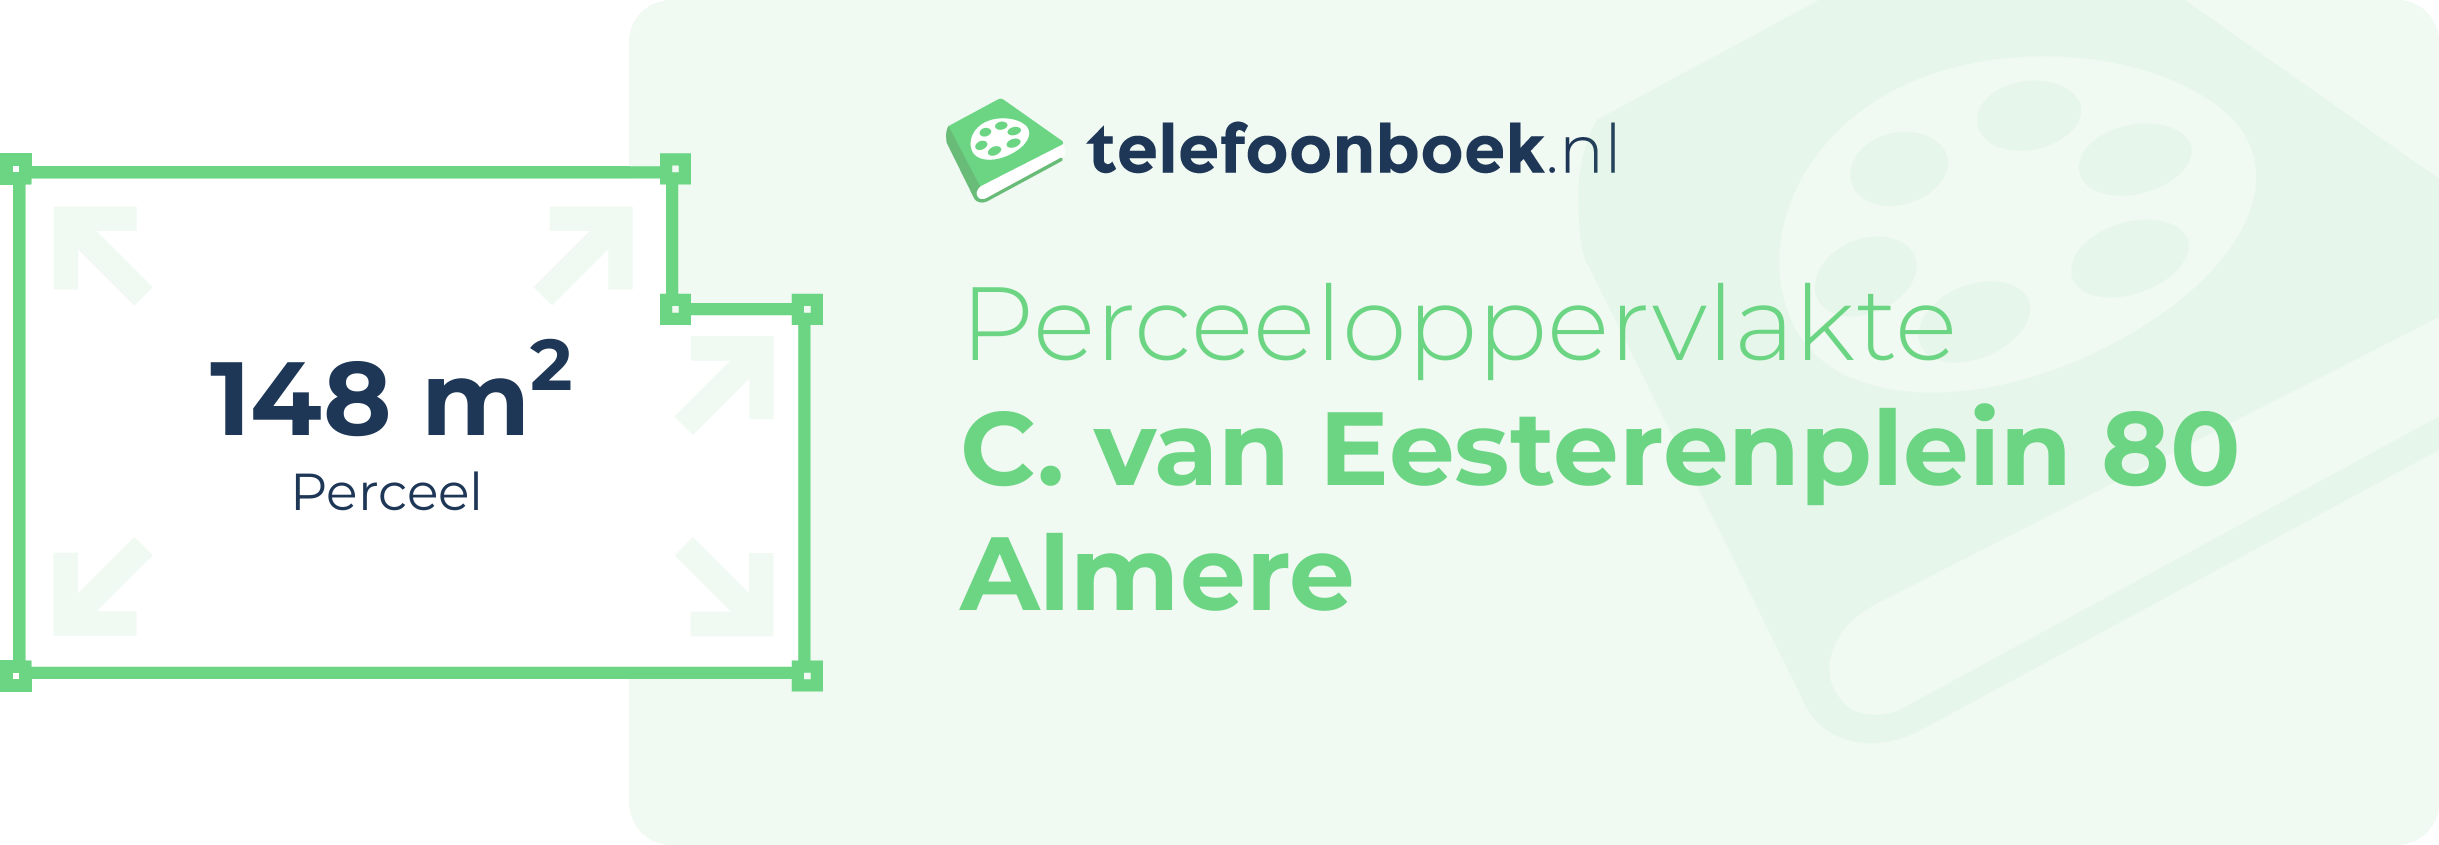 Perceeloppervlakte C. Van Eesterenplein 80 Almere